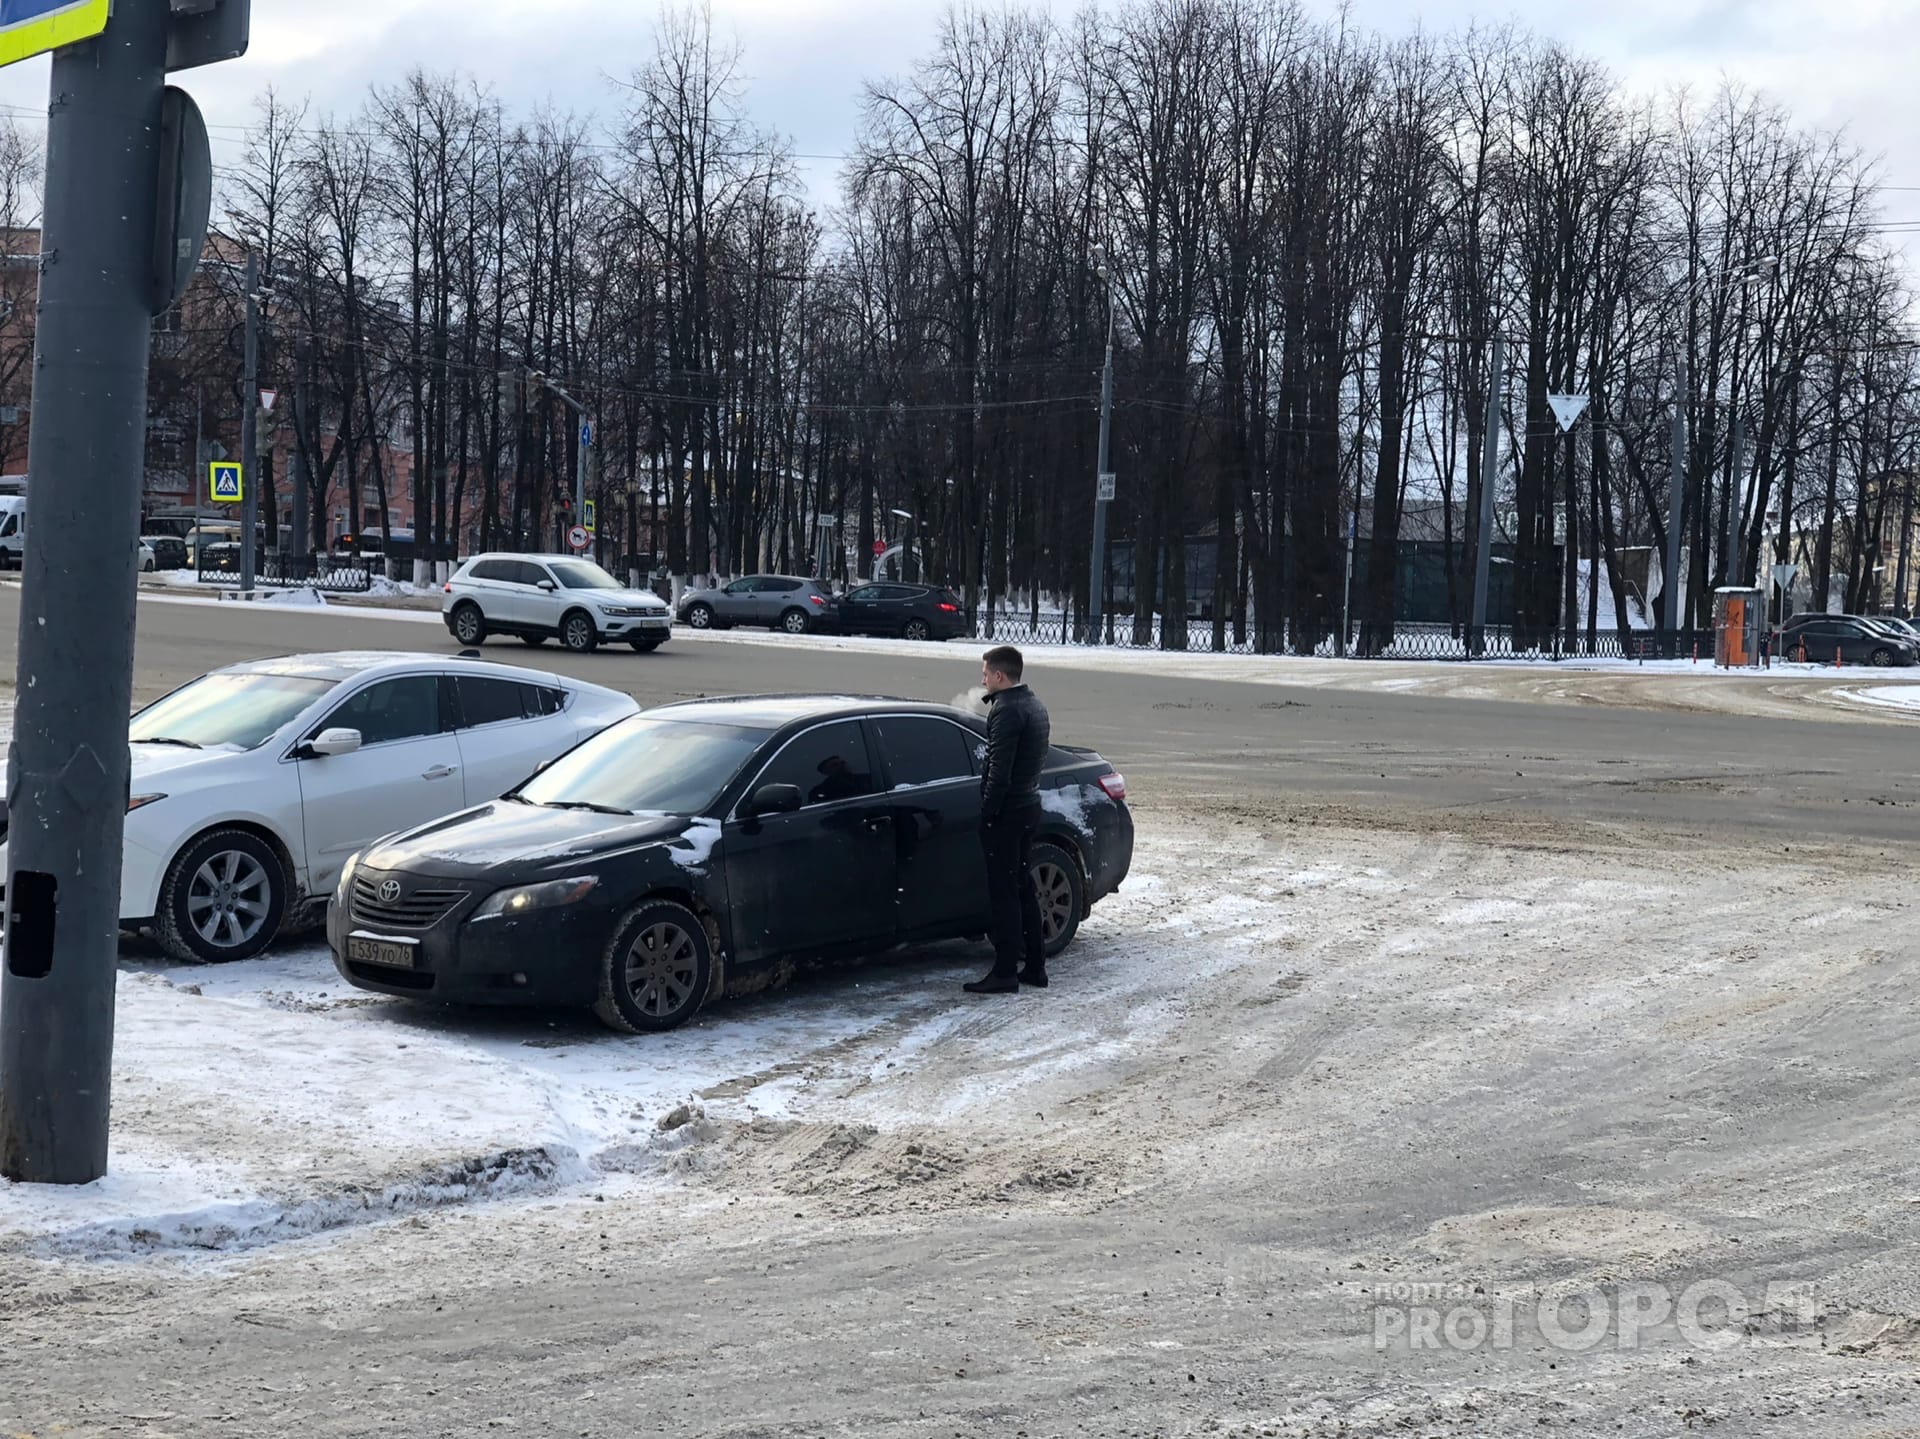 Остановят каждое авто: ГИБДД объявила массовую проверку водителей в Ярославле